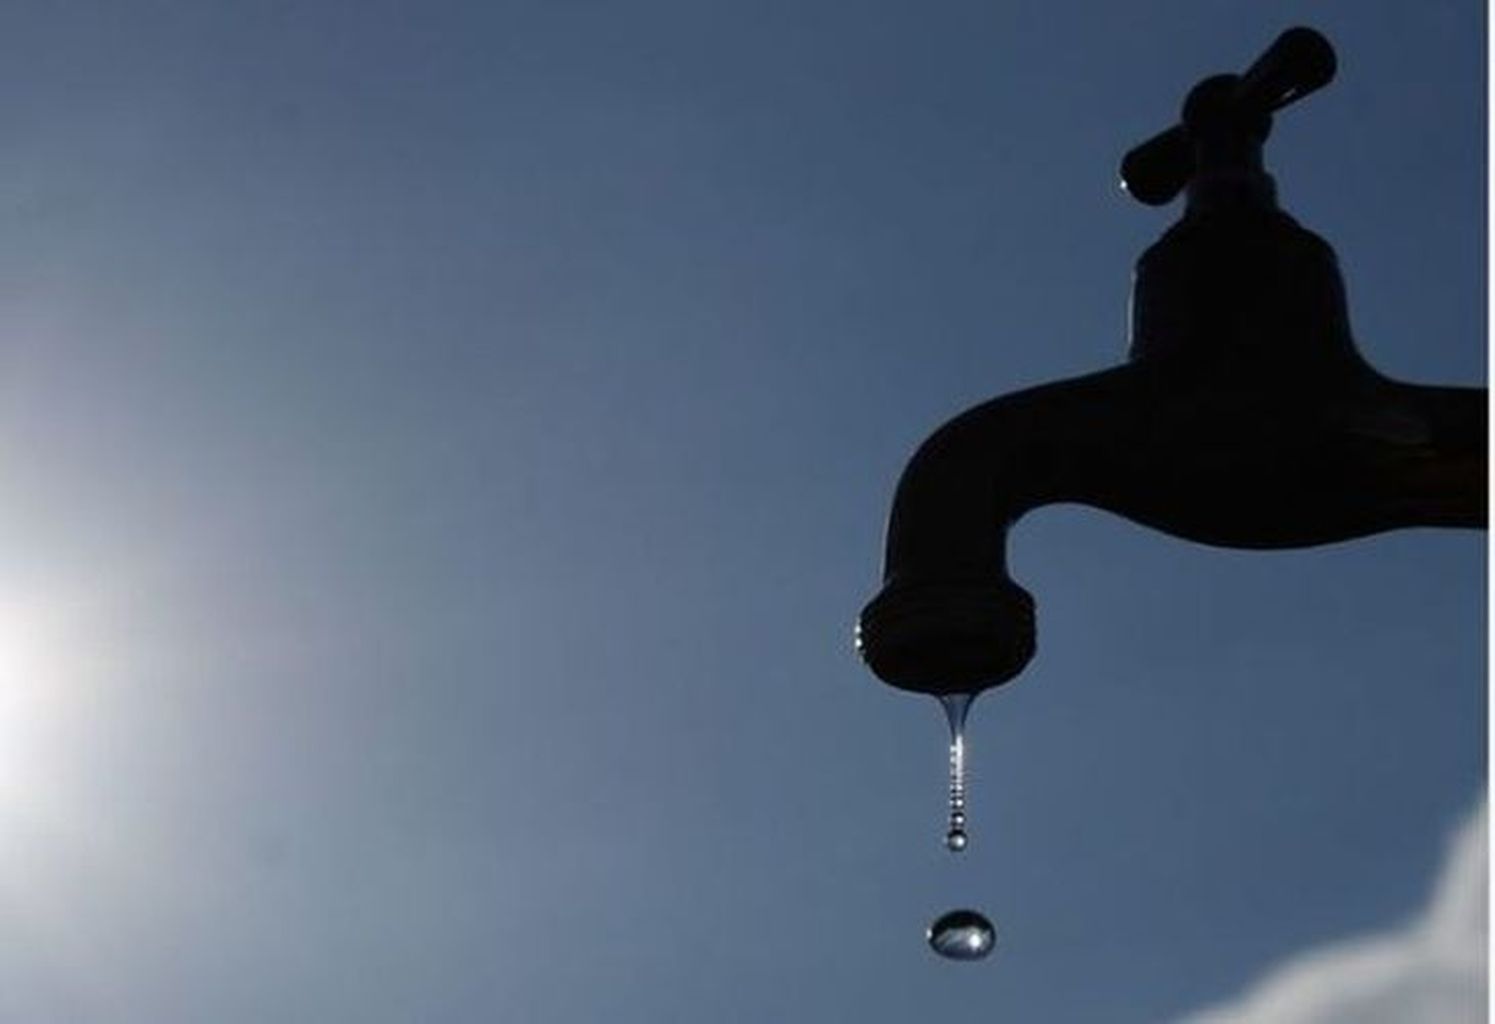 Χαλκίδα: Σε ποιες περιοχές είναι πιθανή η διακοπή νερού αύριο Πέμπτη 18 Αυγούστου